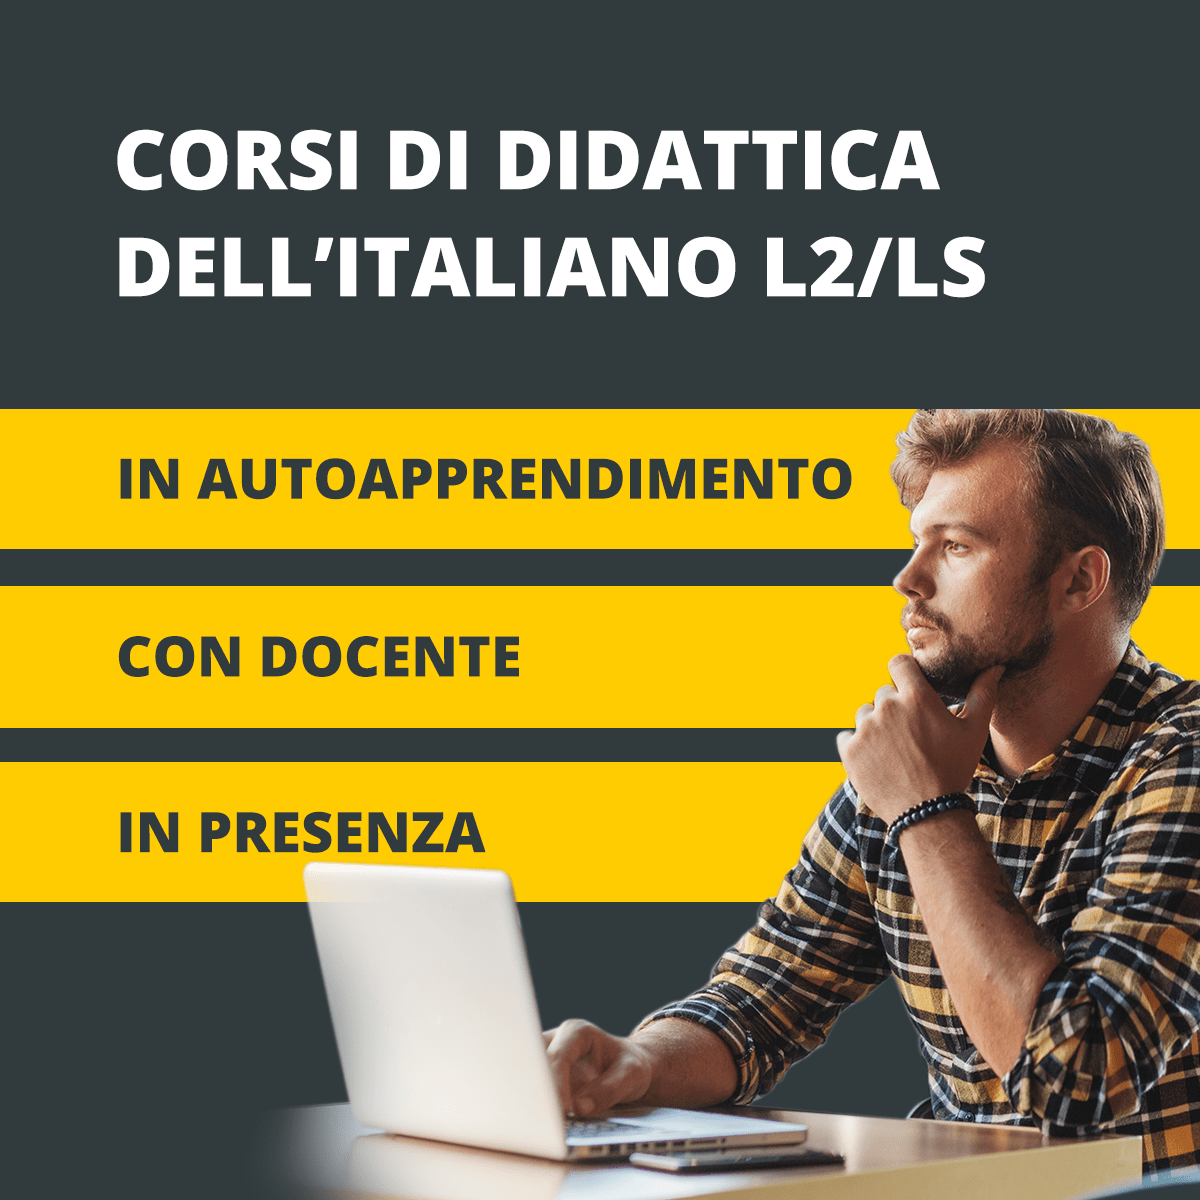 Corsi di didattica dell'italiano L2: Cedils, Ditals e Dils-PG